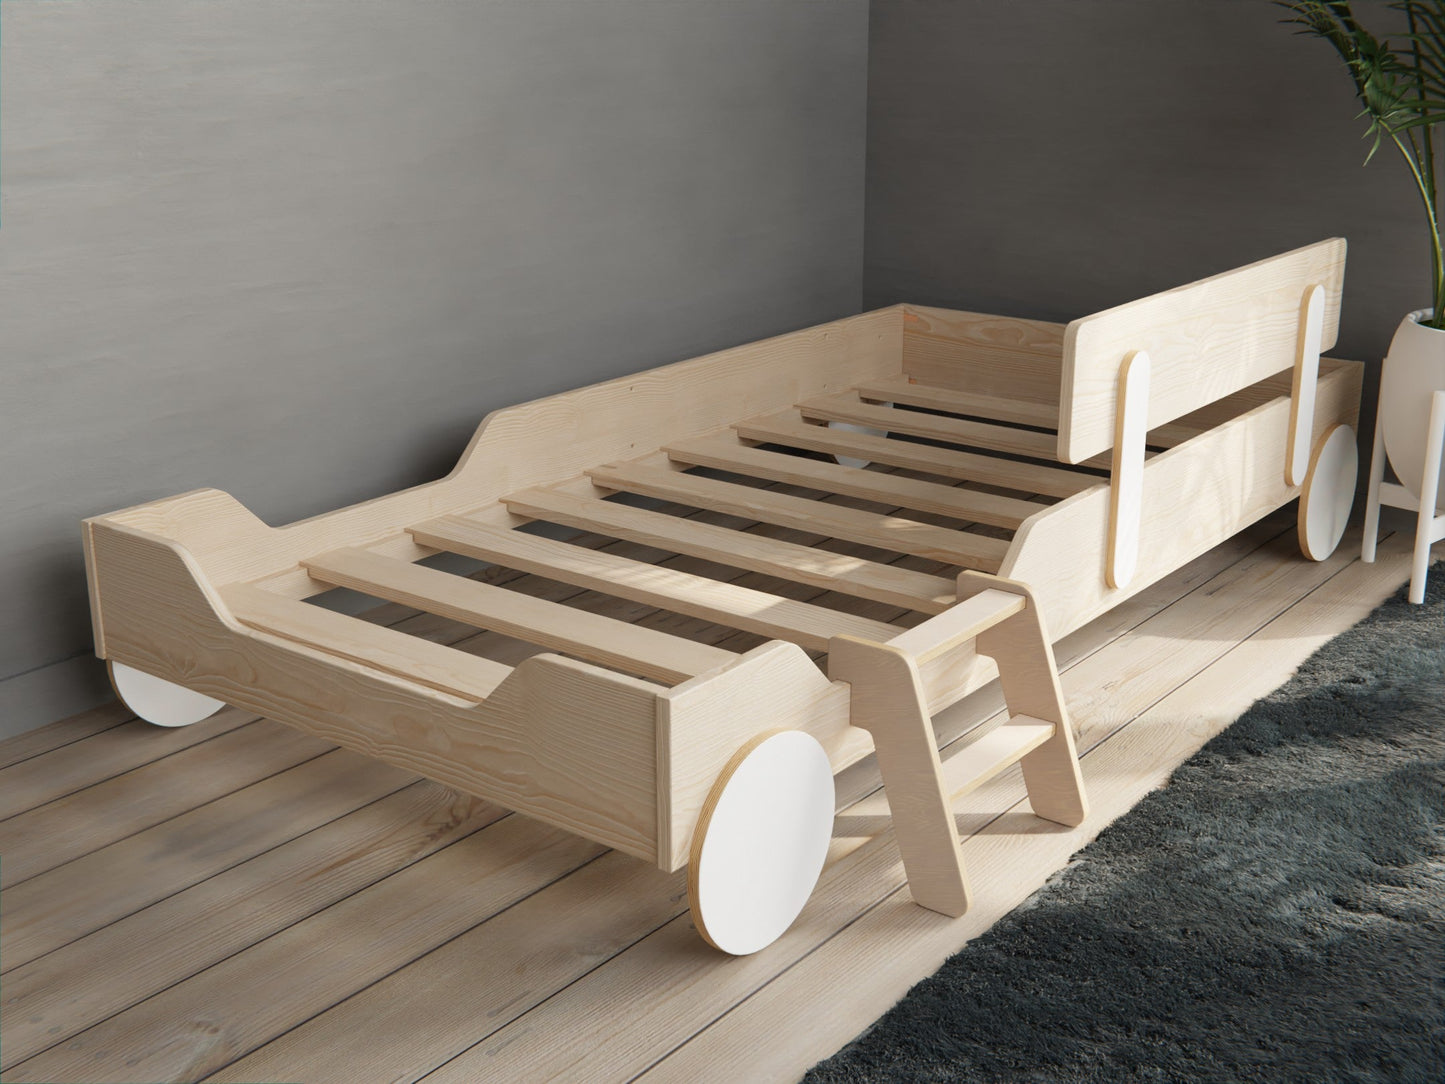 Tiny ladder for Toddler beds - KitSmart Furniture